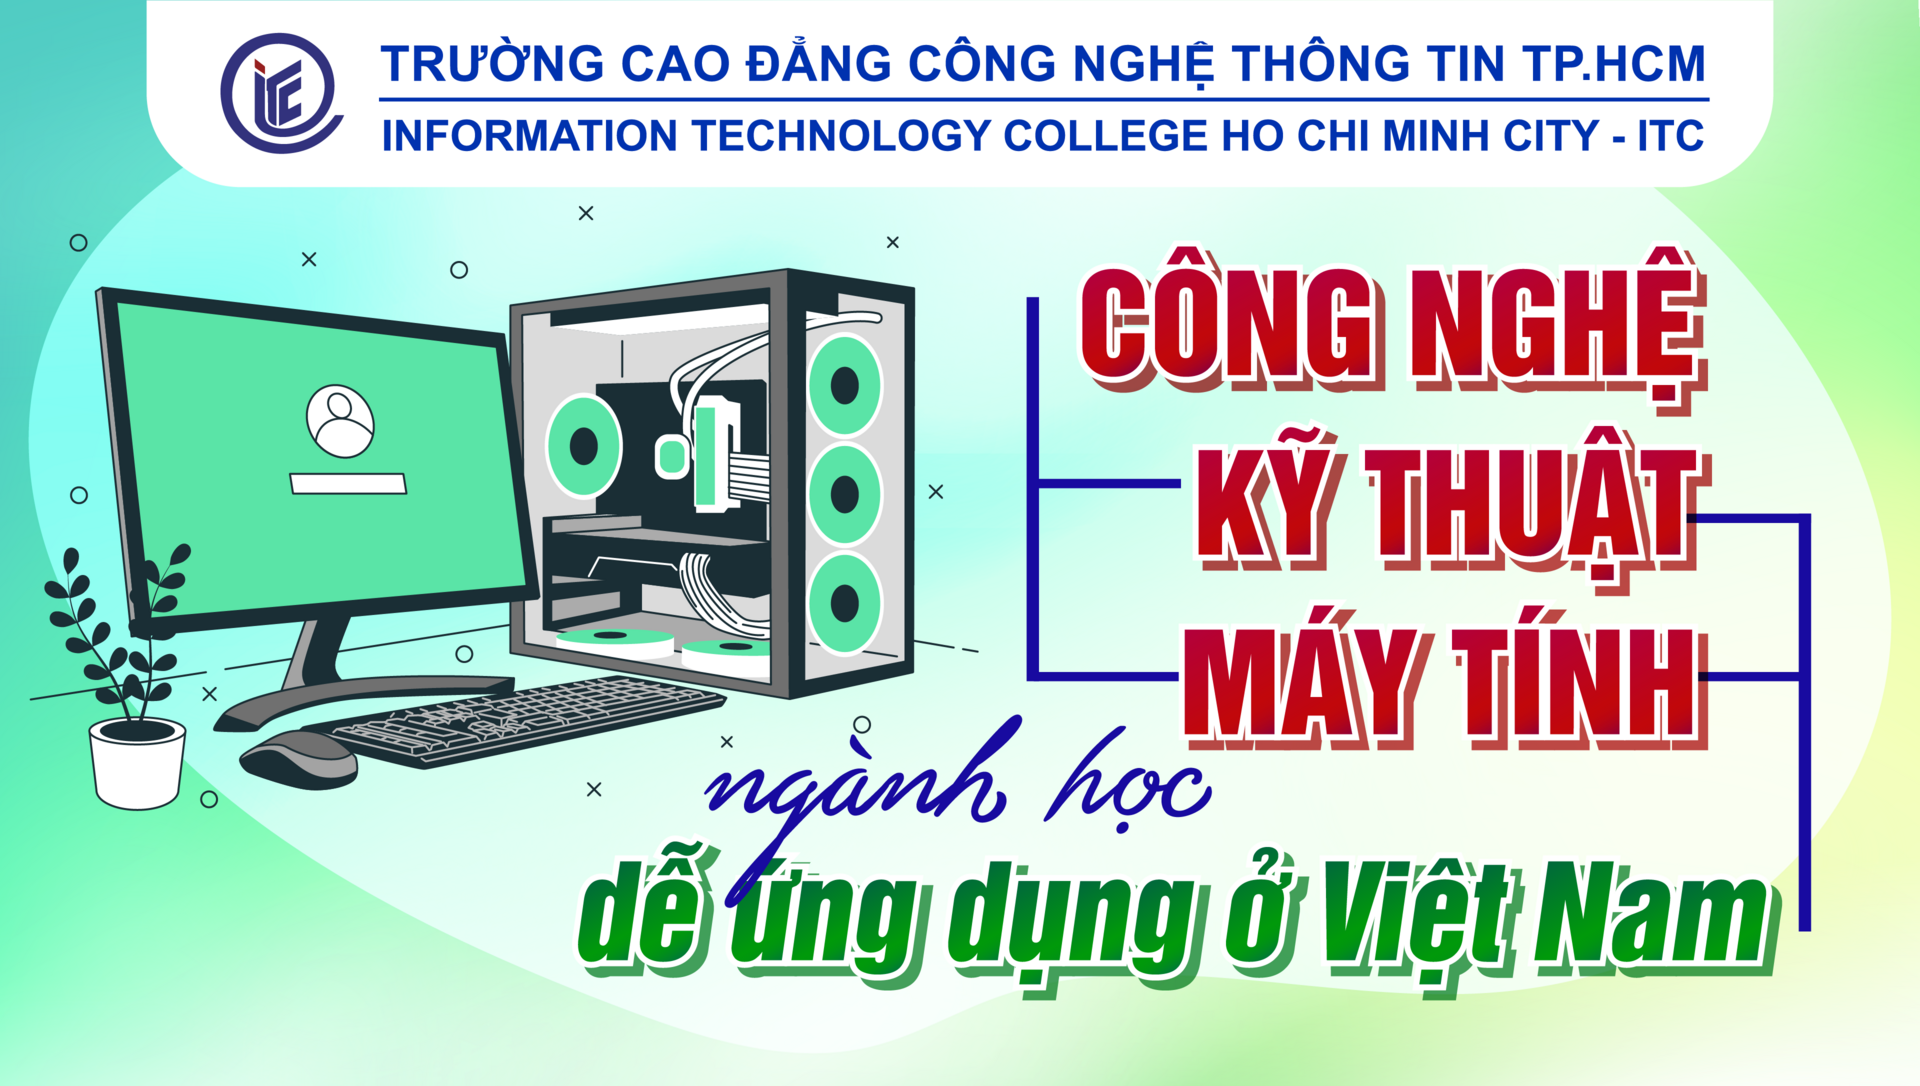 Công nghệ kỹ thuật máy tính là ngành học dễ ứng dụng ở Việt Nam